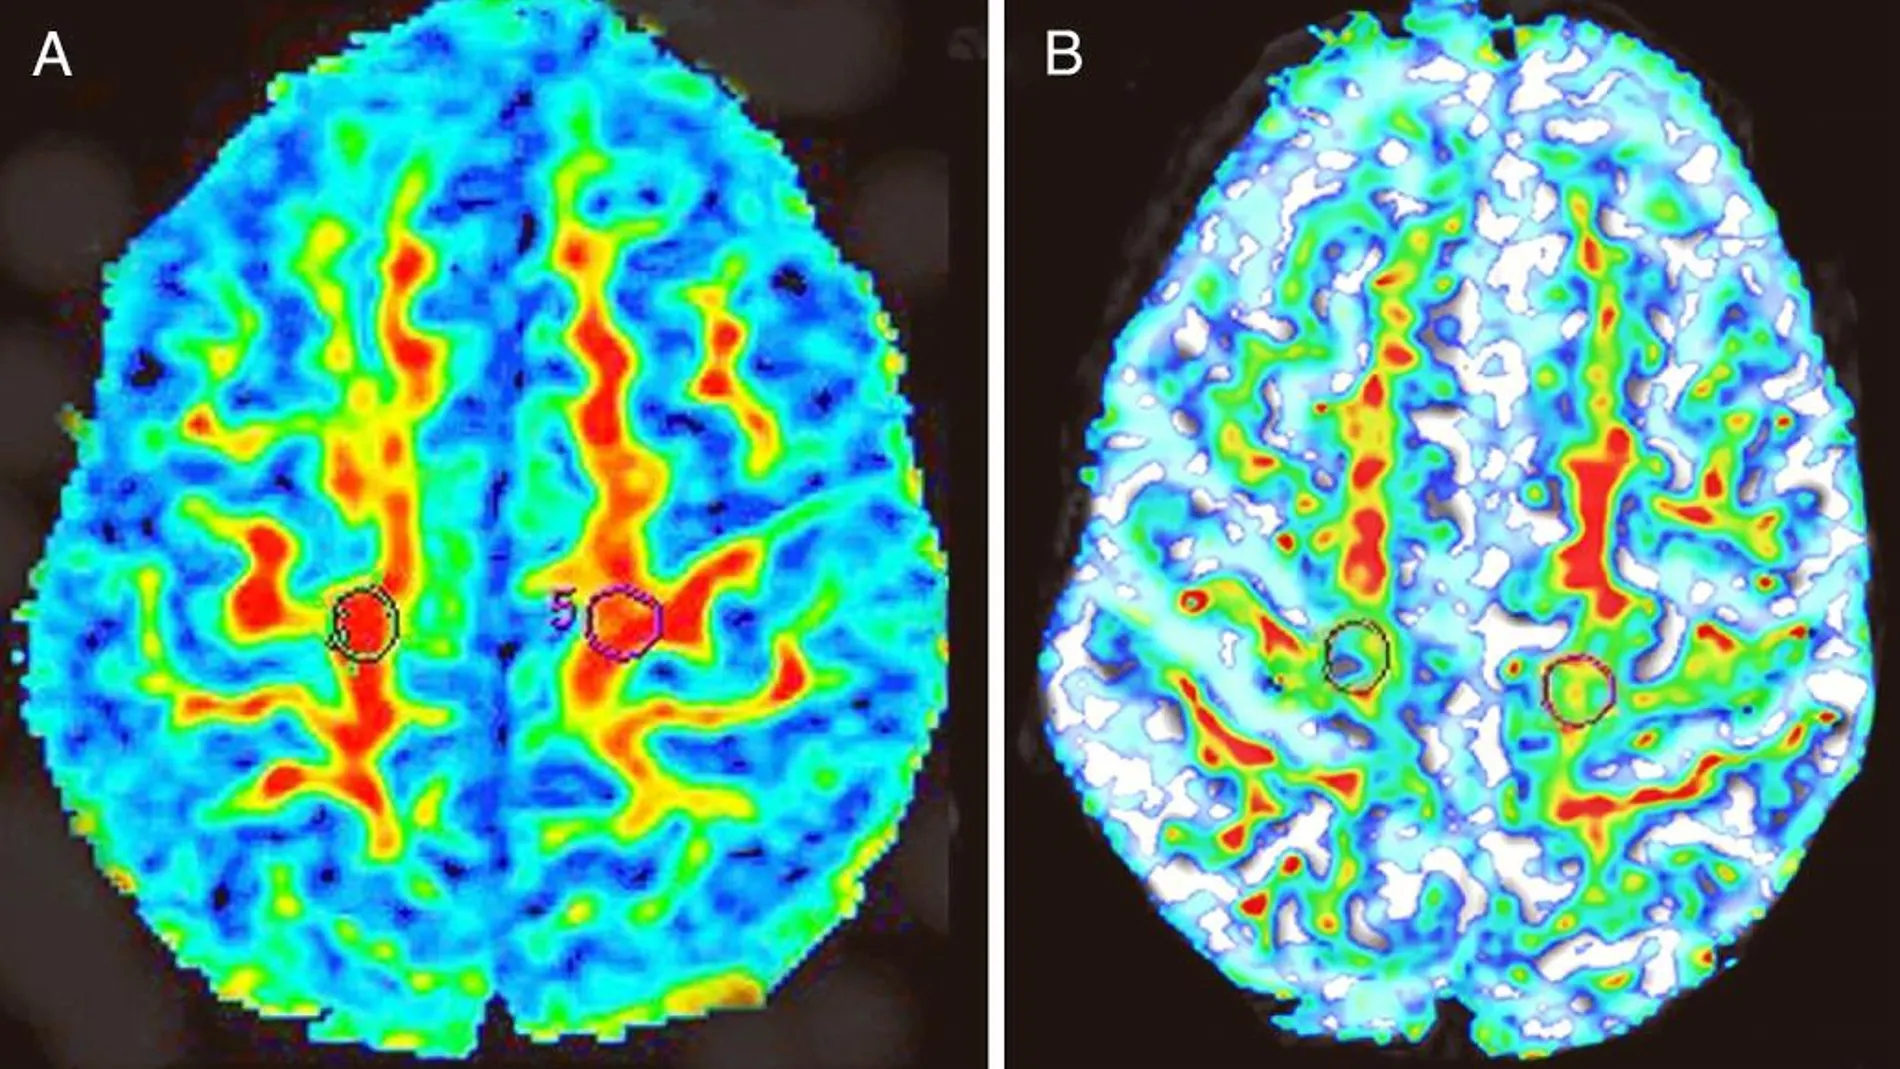 Mapas de color de anisotropía fraccional en axial de un sujeto sano (A) y un paciente con ELA (B). En el enfermo se percibe una menor elasticidad cerebral